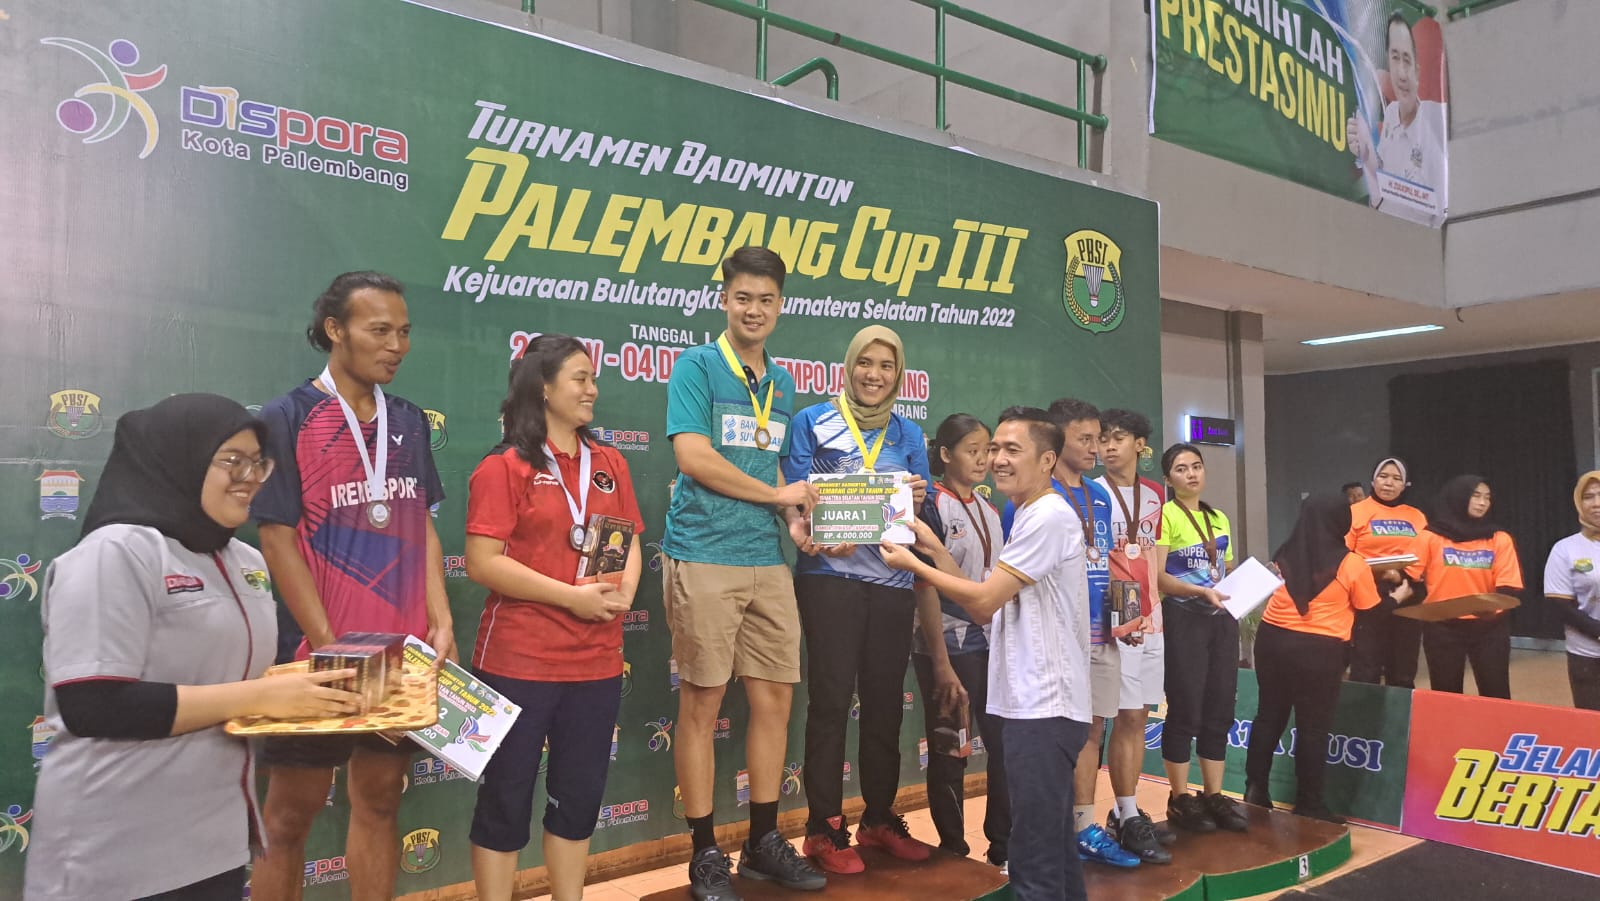 Ratu Dewa Bagikan Hadiah Turnamen Badminton Palembang Cup III, Berikut Daftar Pemenangnya 